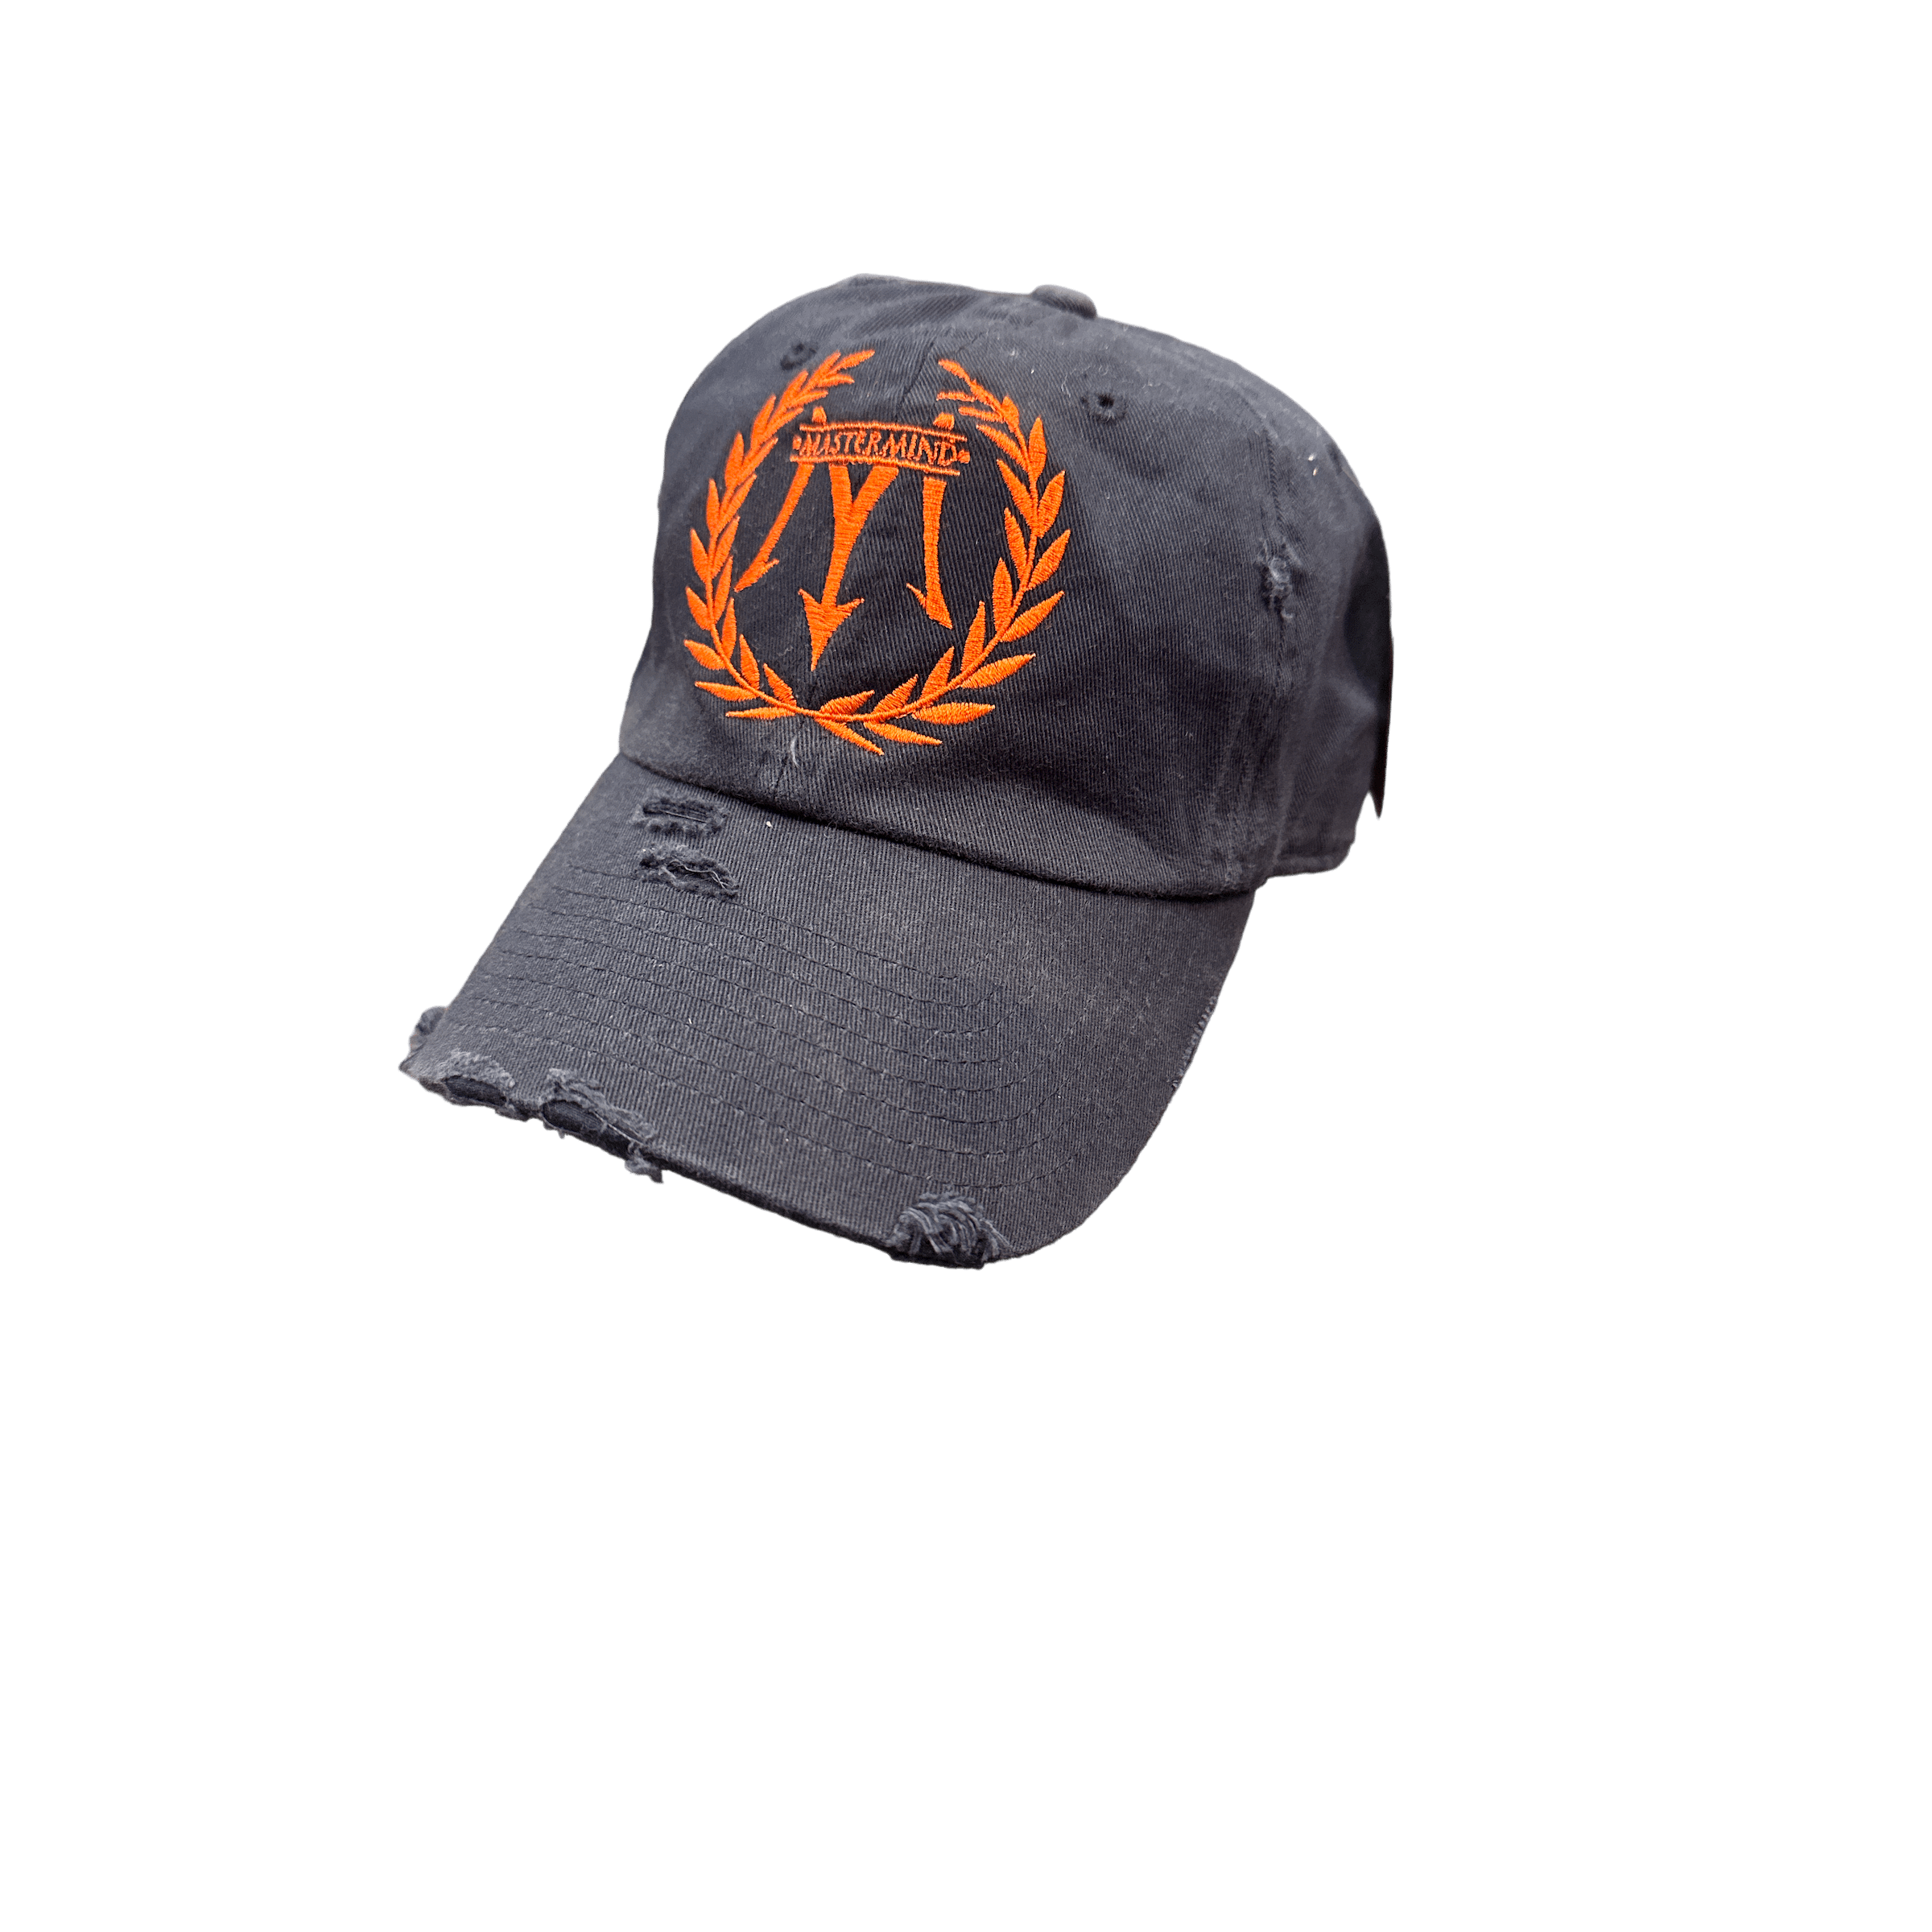 Mastermind315 Orangemen Crest Mastermind cap